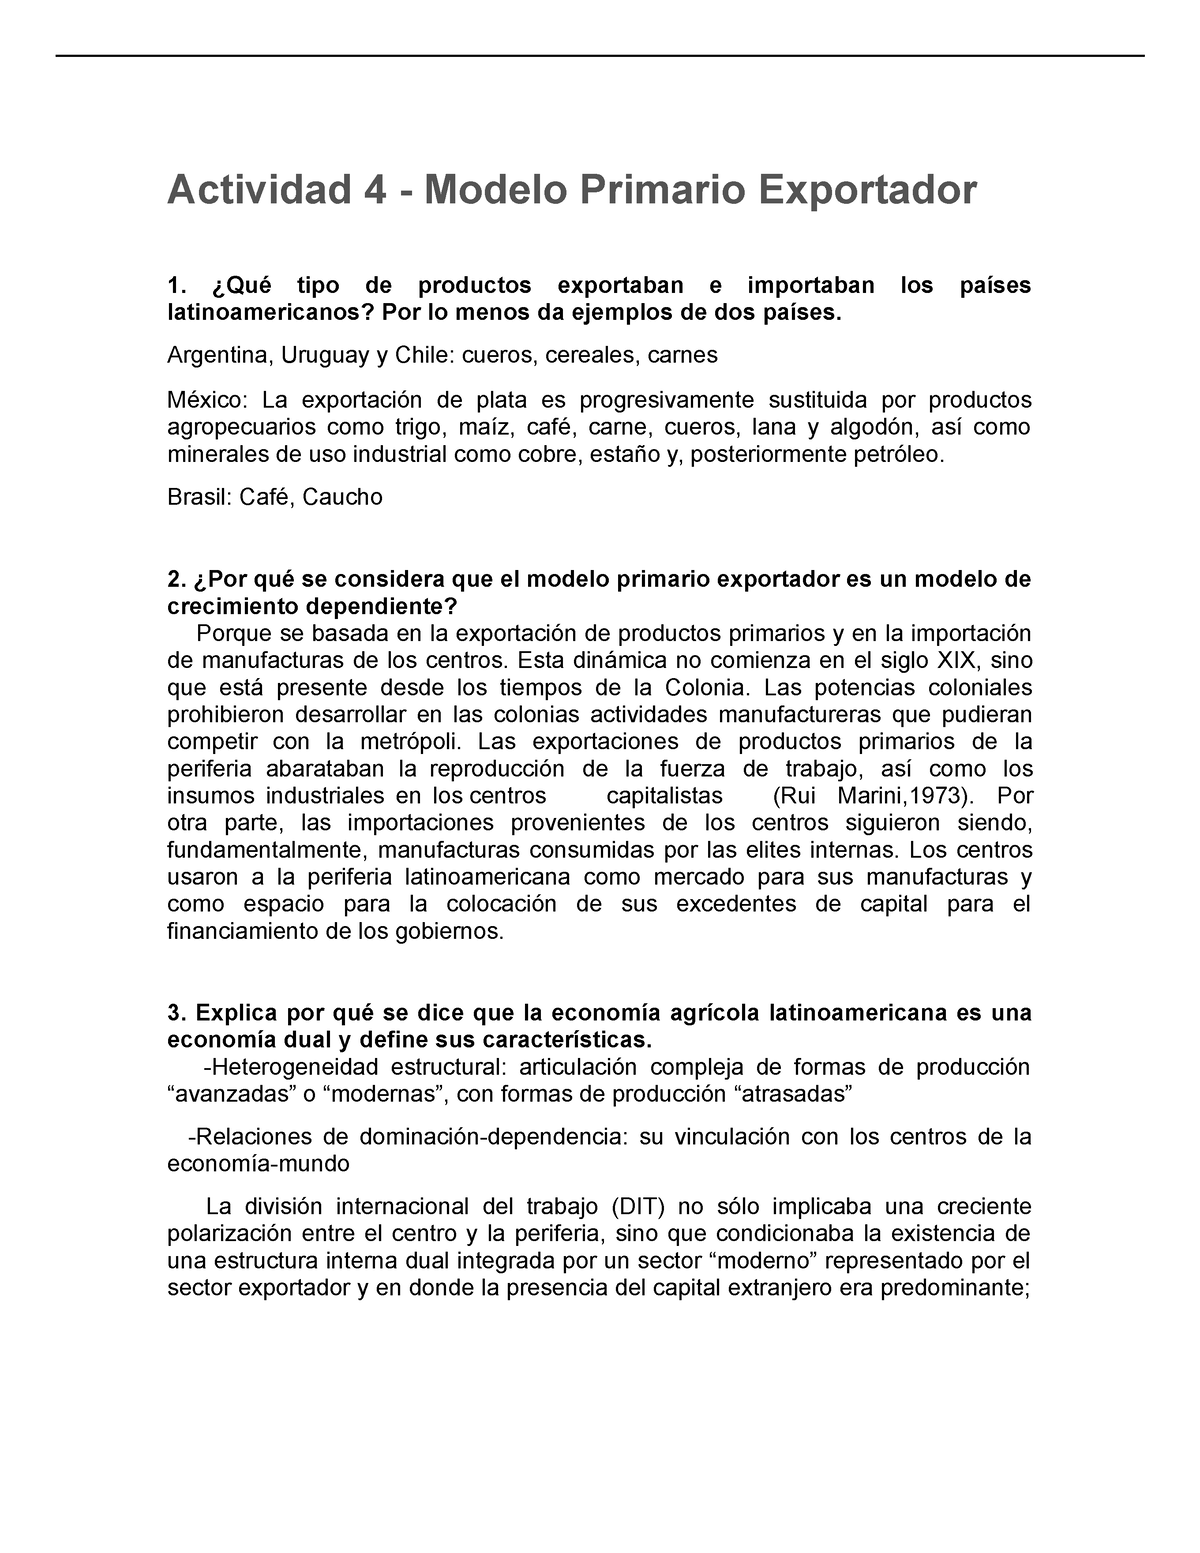 Actividad 4 modelo primario exportador - Actividad 4 - Modelo Primario  Exportador ¿Qué tipo de - Studocu